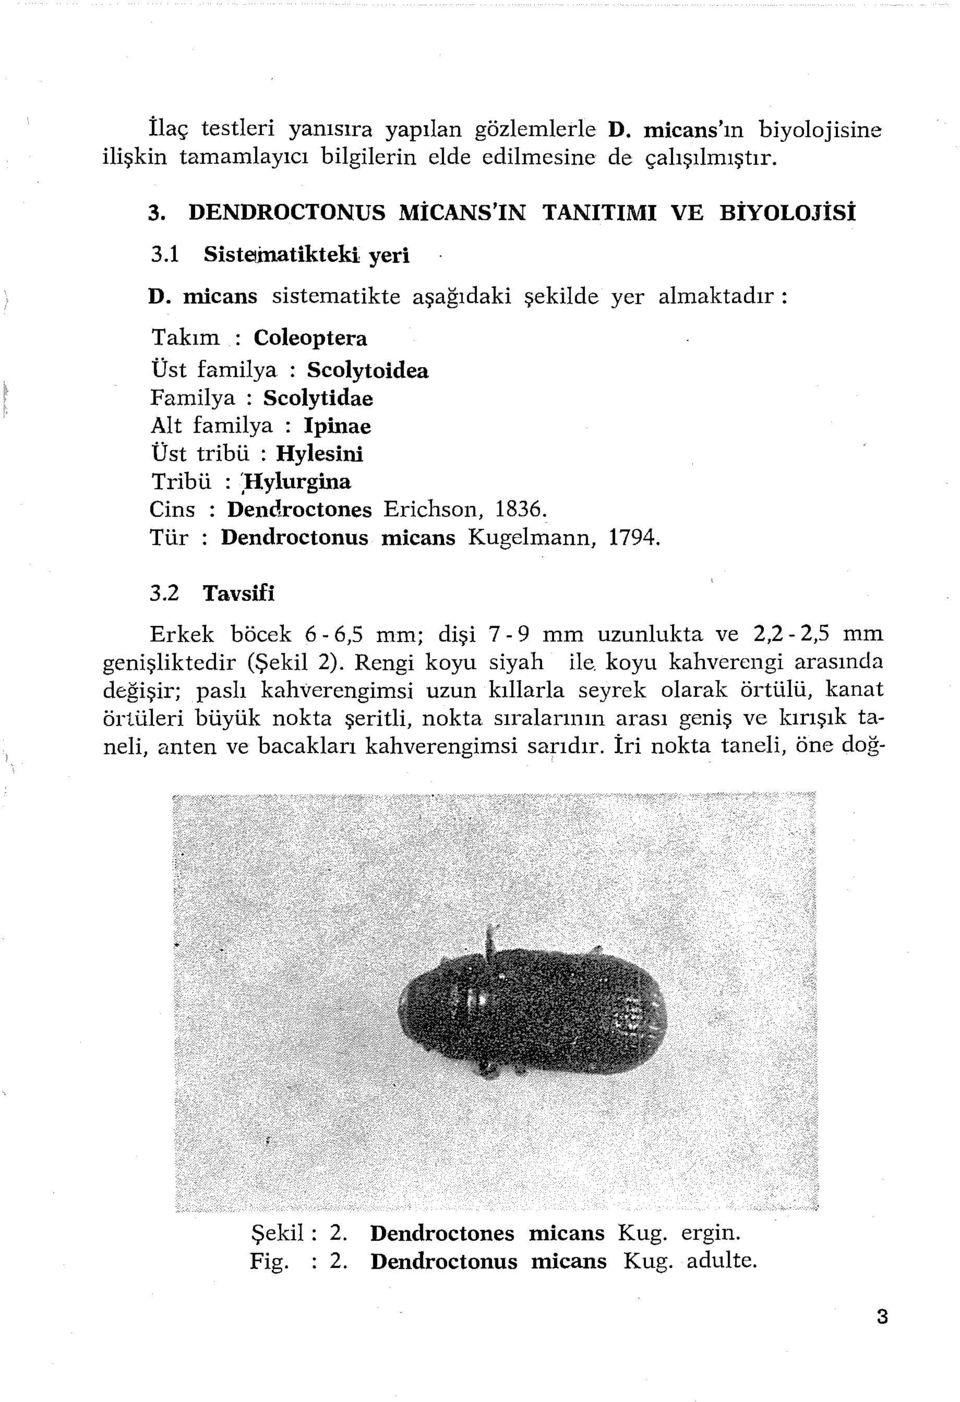 micans sistematikte aşağıdaki şekilde yer almaktadır : Takım : Coleoptera Üst familya : Scolytoidea Familya : Scolytidae Alt familya : Ipinae Üst tribü : Hylesiııi Tribü : :Hylurgina Cins :